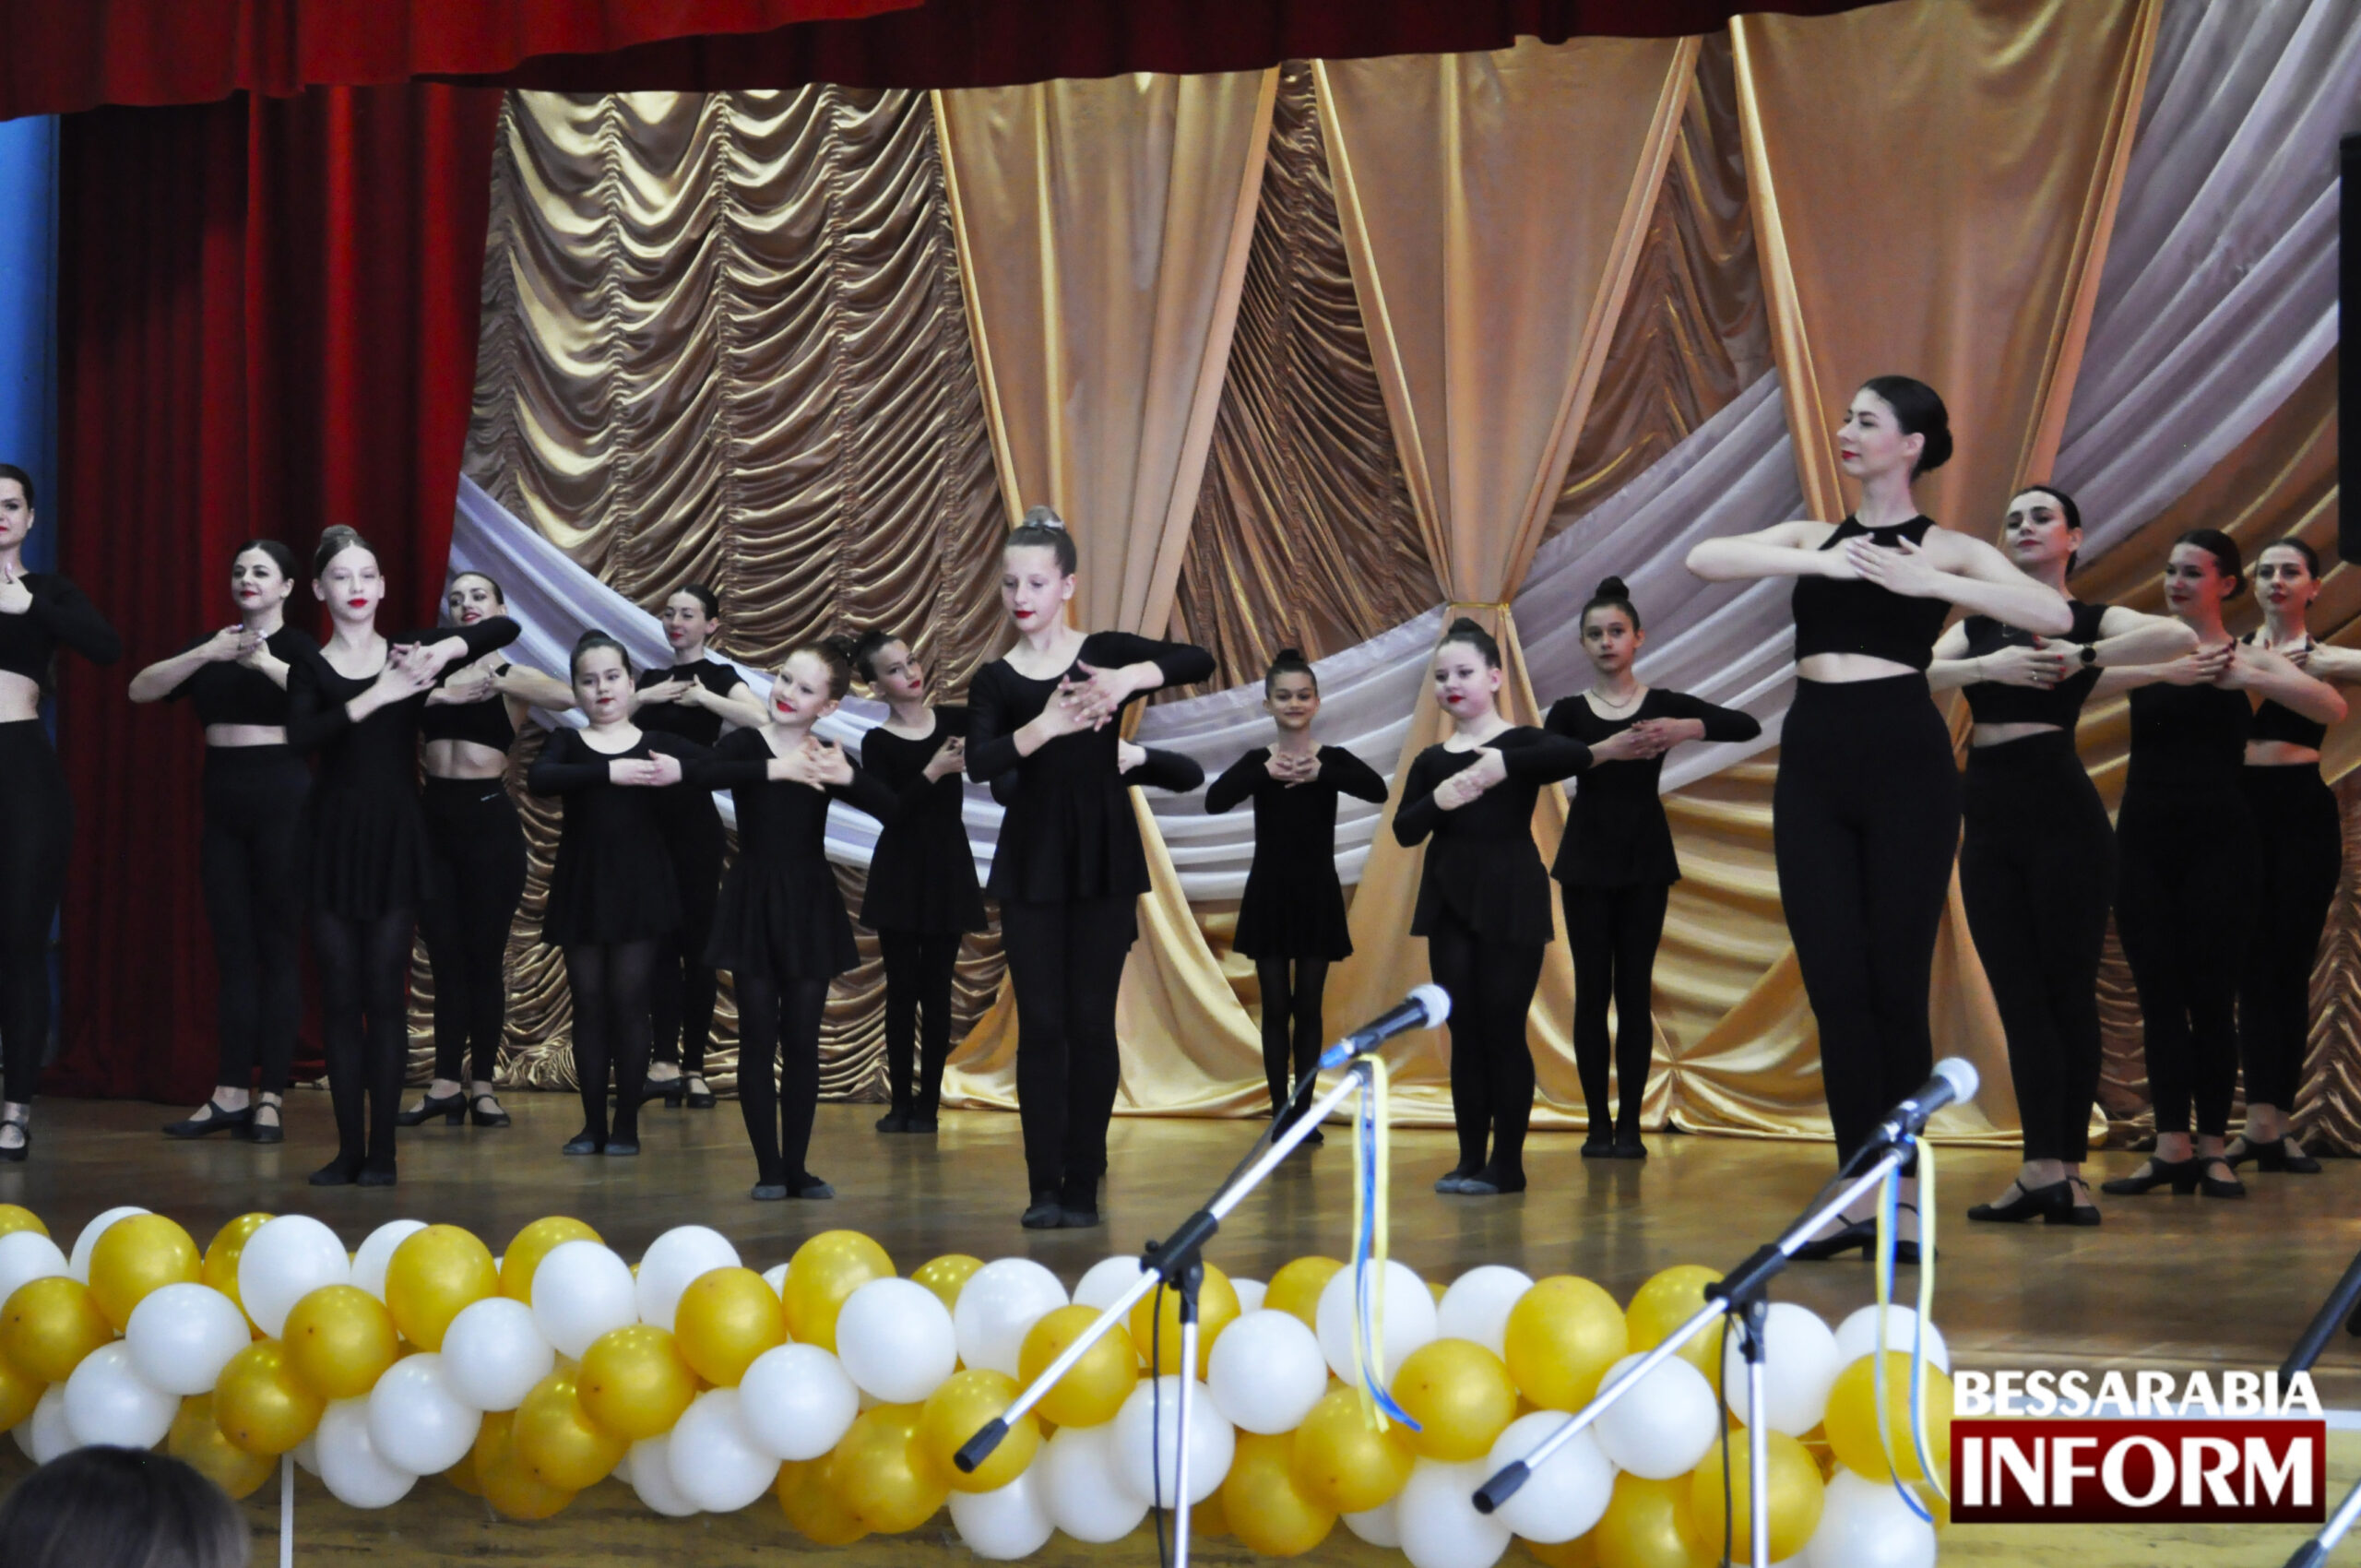 Измаильский танцевальный коллектив "Радуга" отпраздновал солидный юбилей